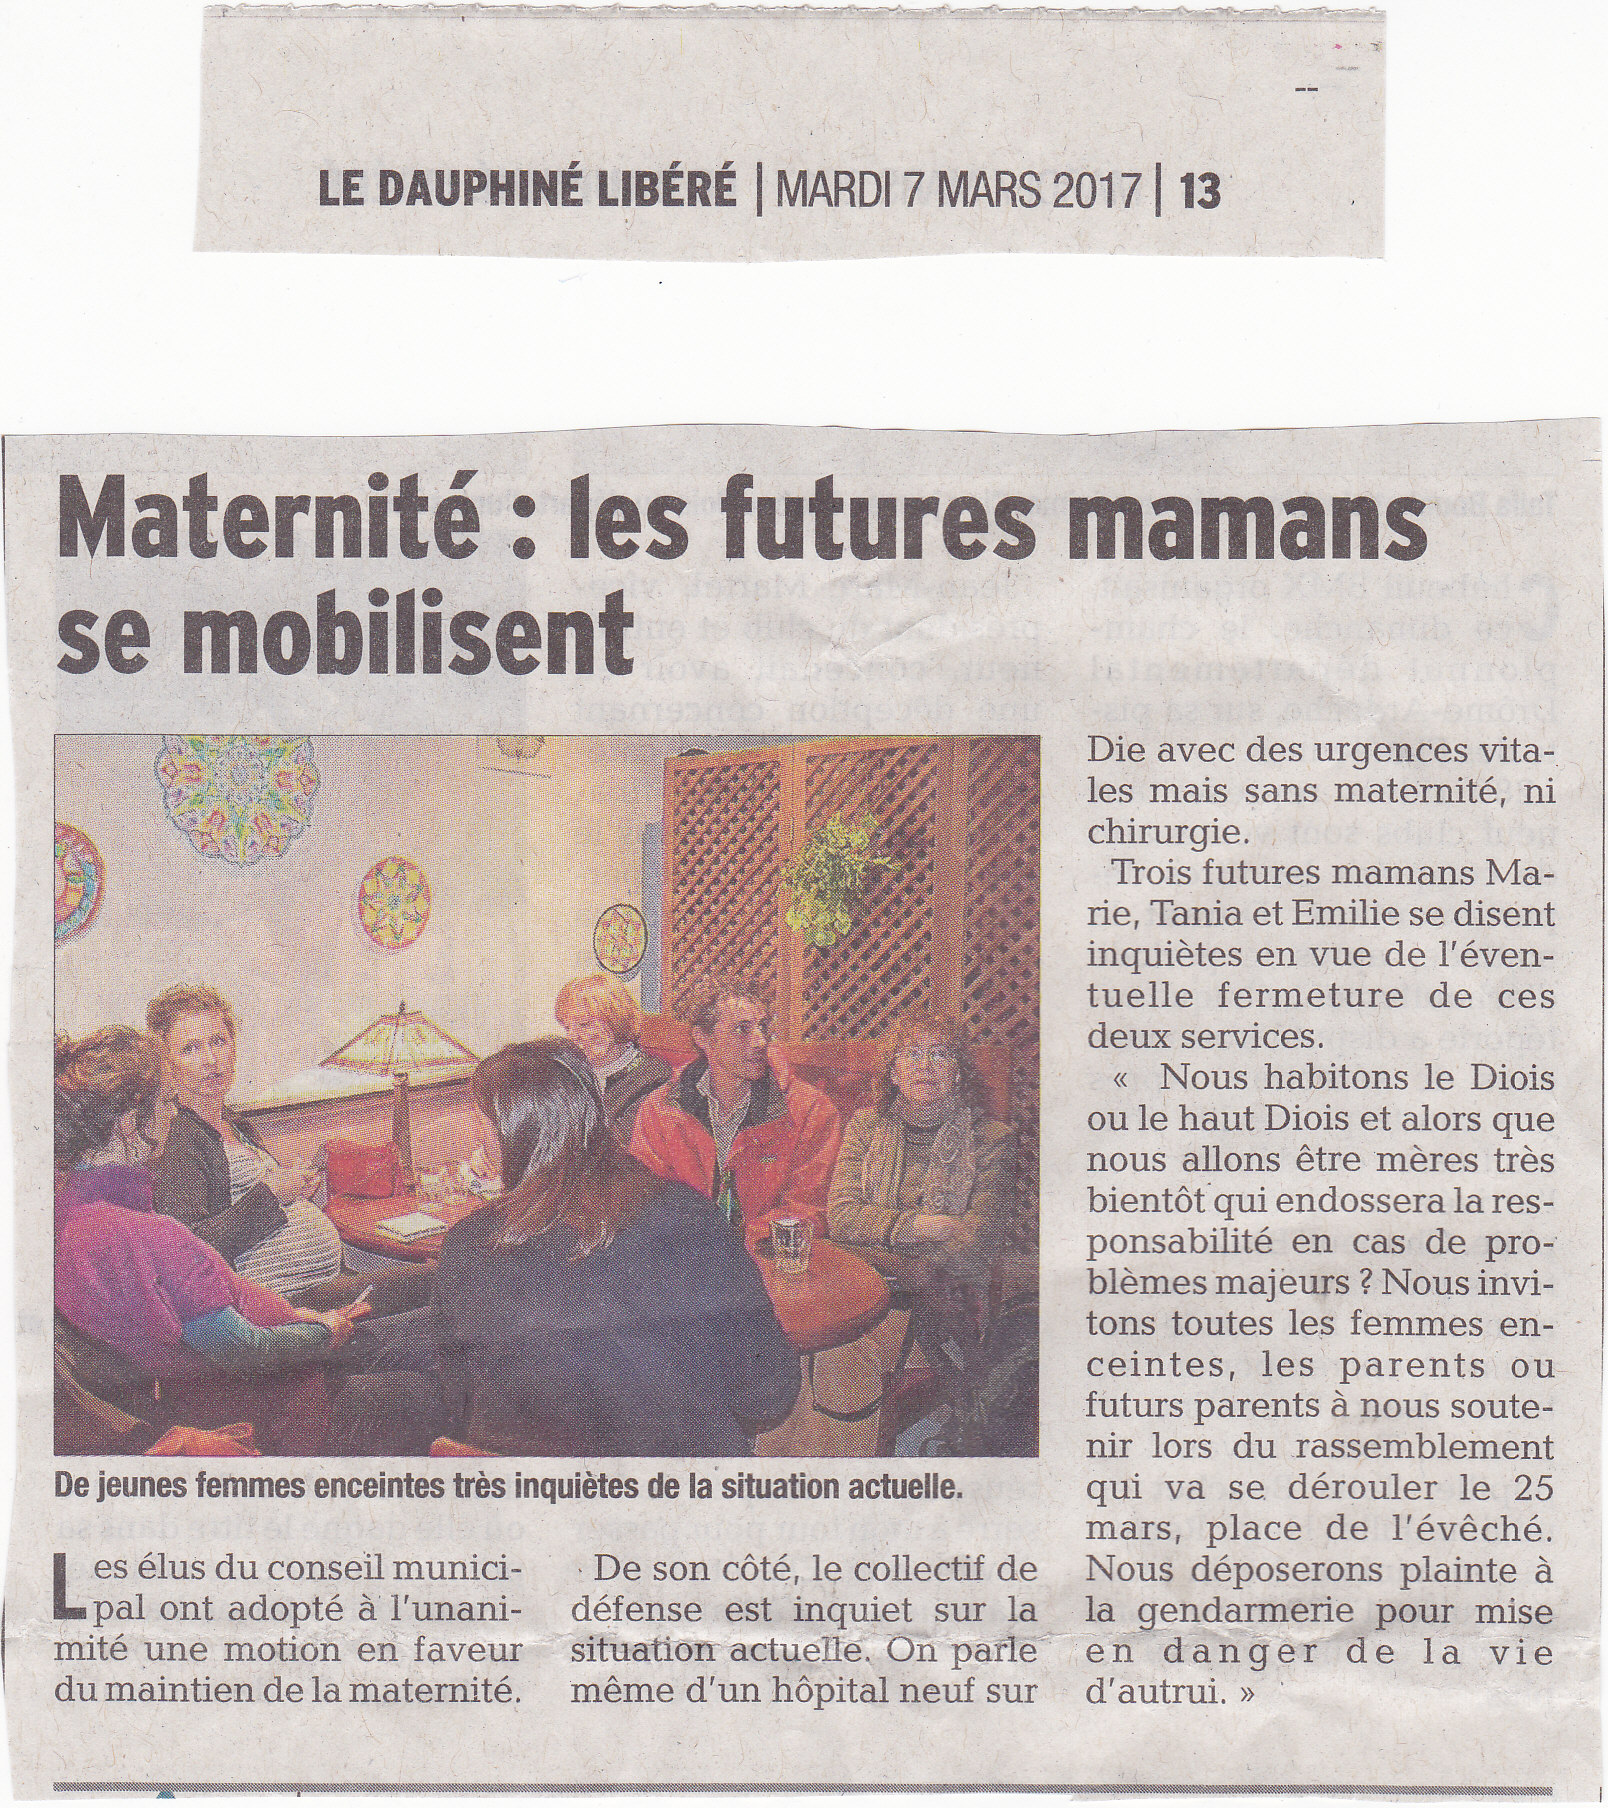 DL_7mars2017_Les_futures_mamans_se_mobilisent.jpg